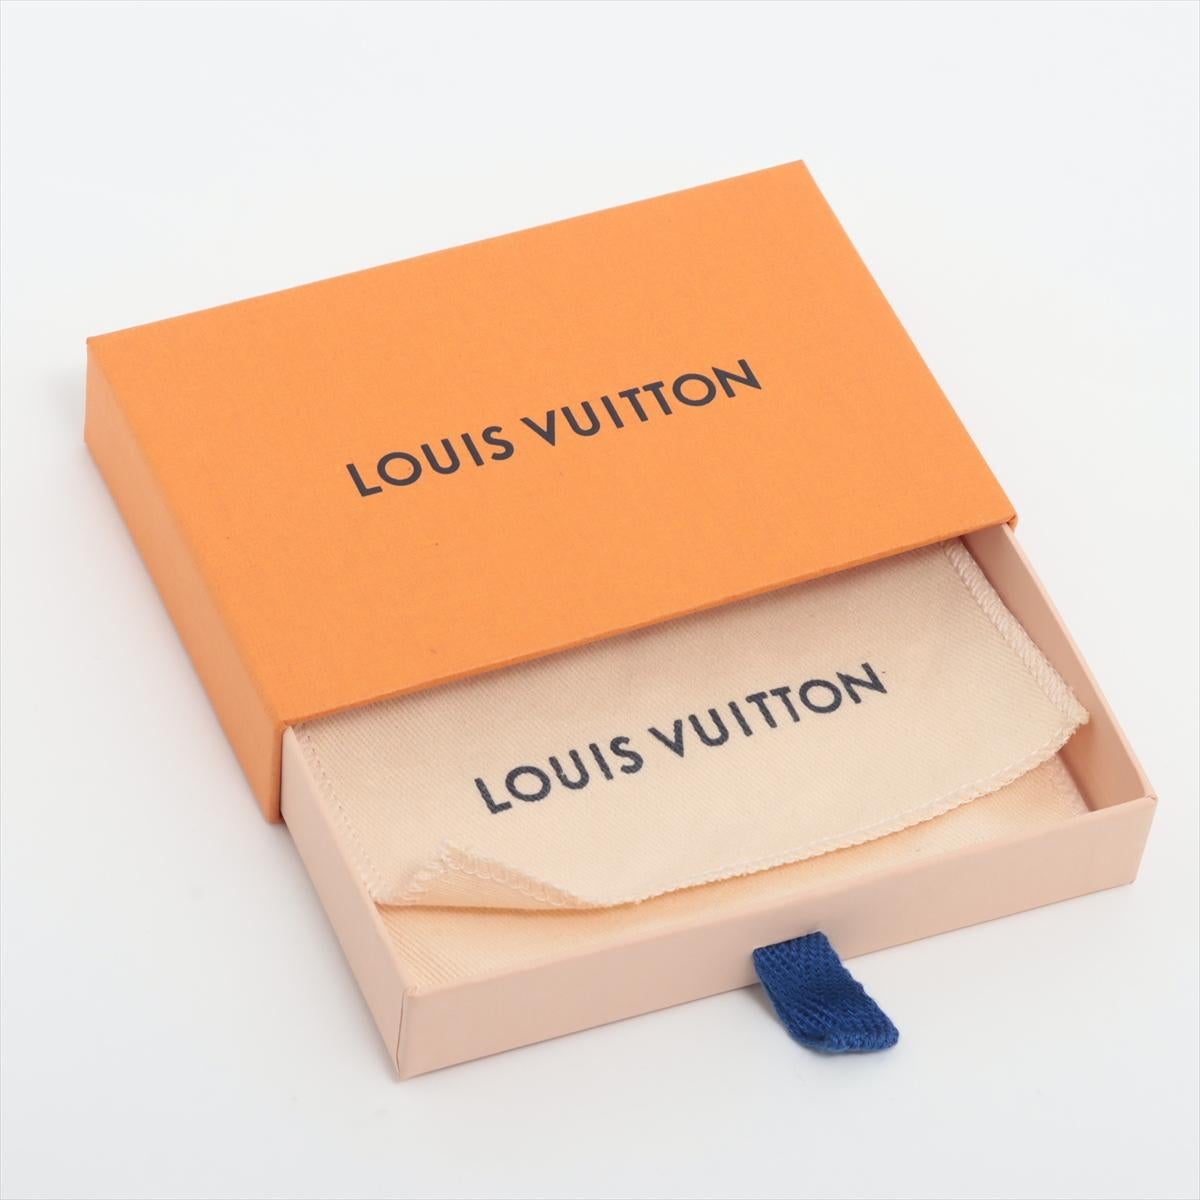 Louis Vuitton Vivienne Puppet Bag Charm 1